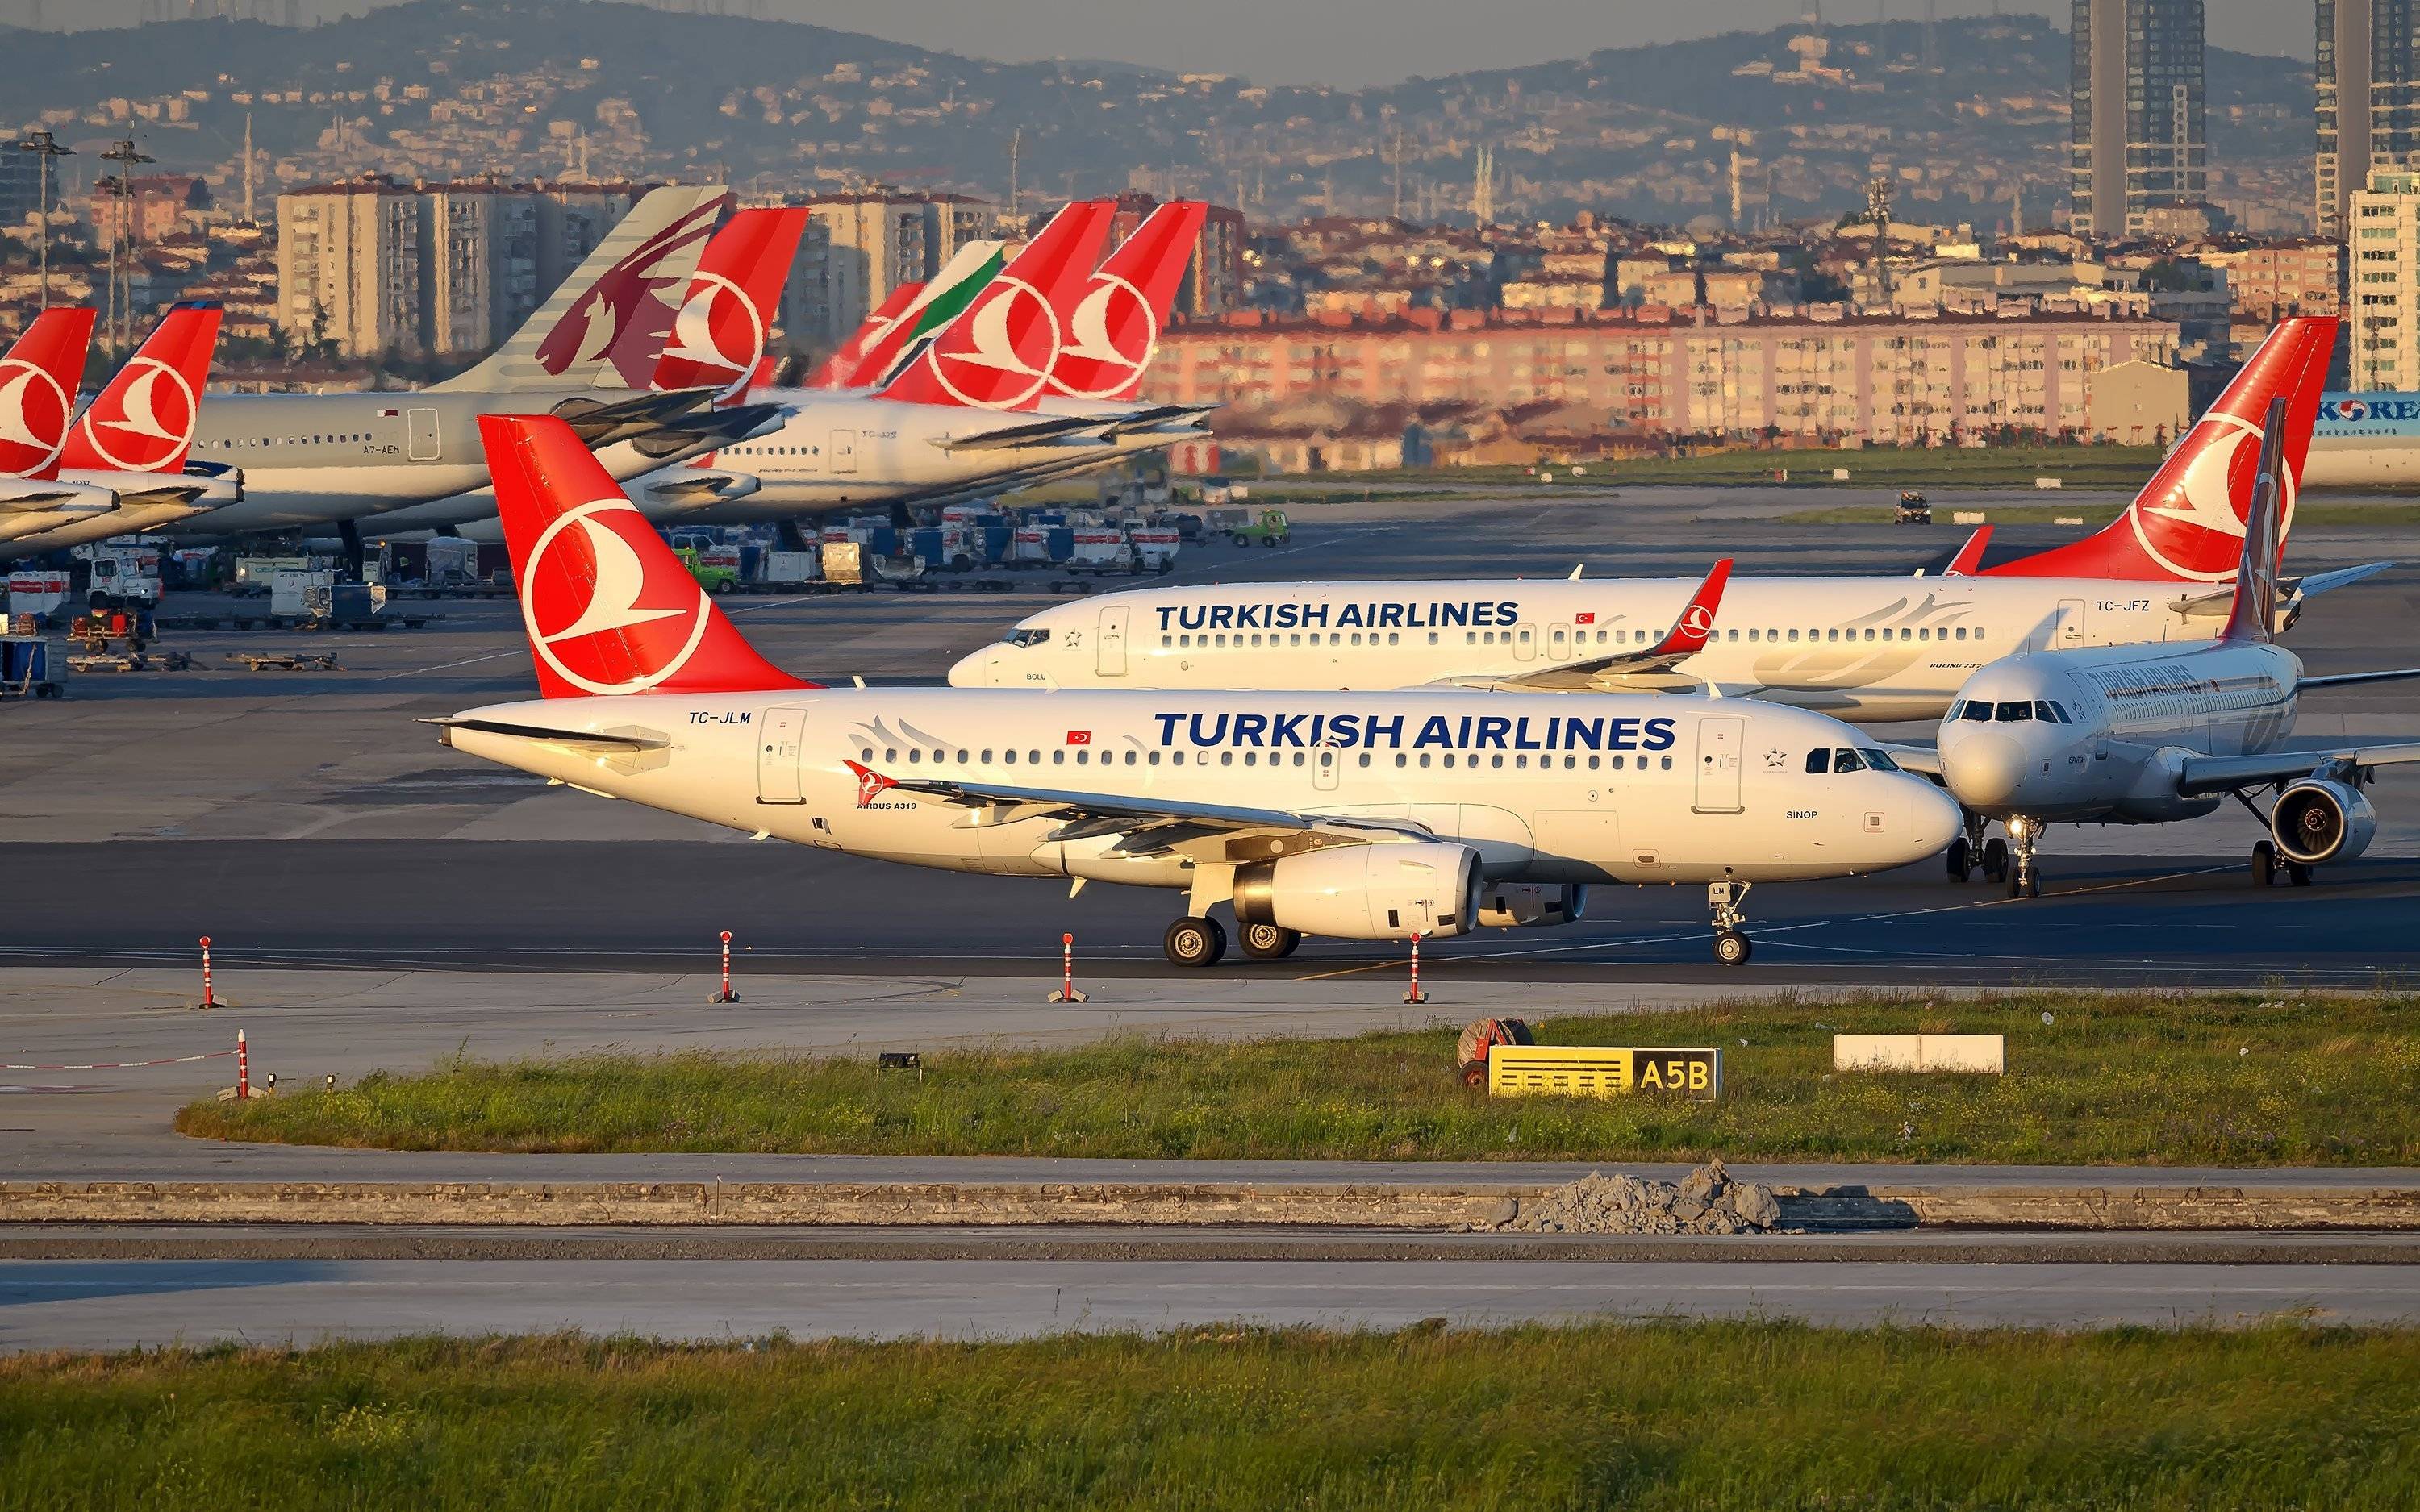 Turkish airlines - отзывы пассажиров 2017-2018 про авиакомпанию турецкие авиалинии